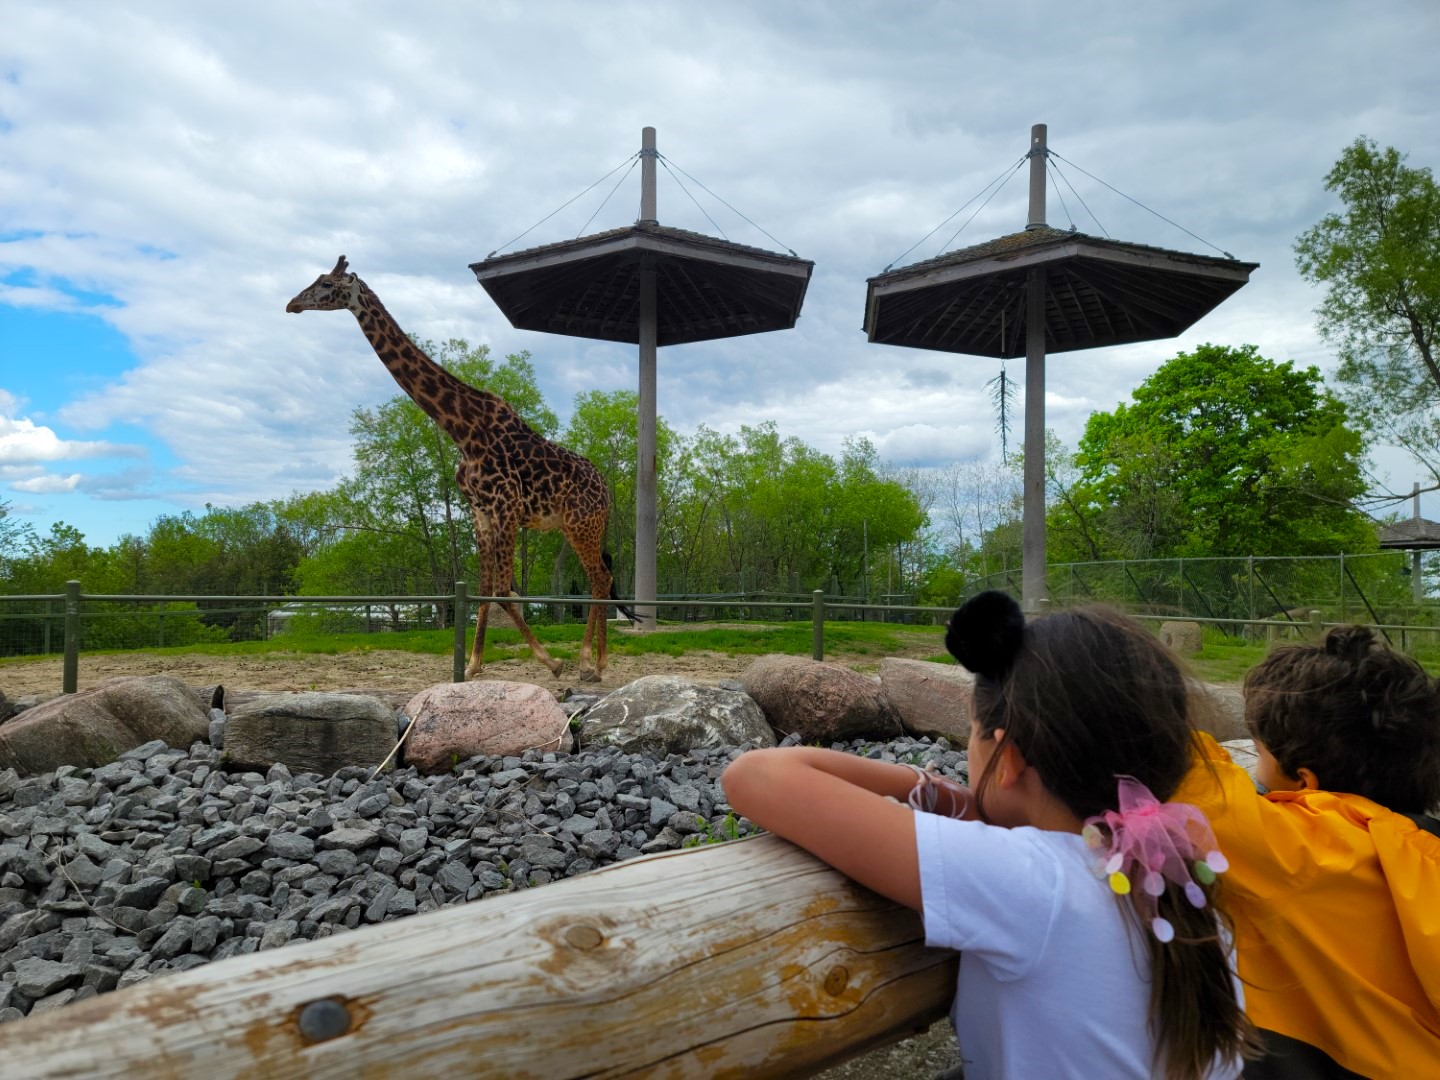 Kids looking at Giraffe at Toronto Zoo